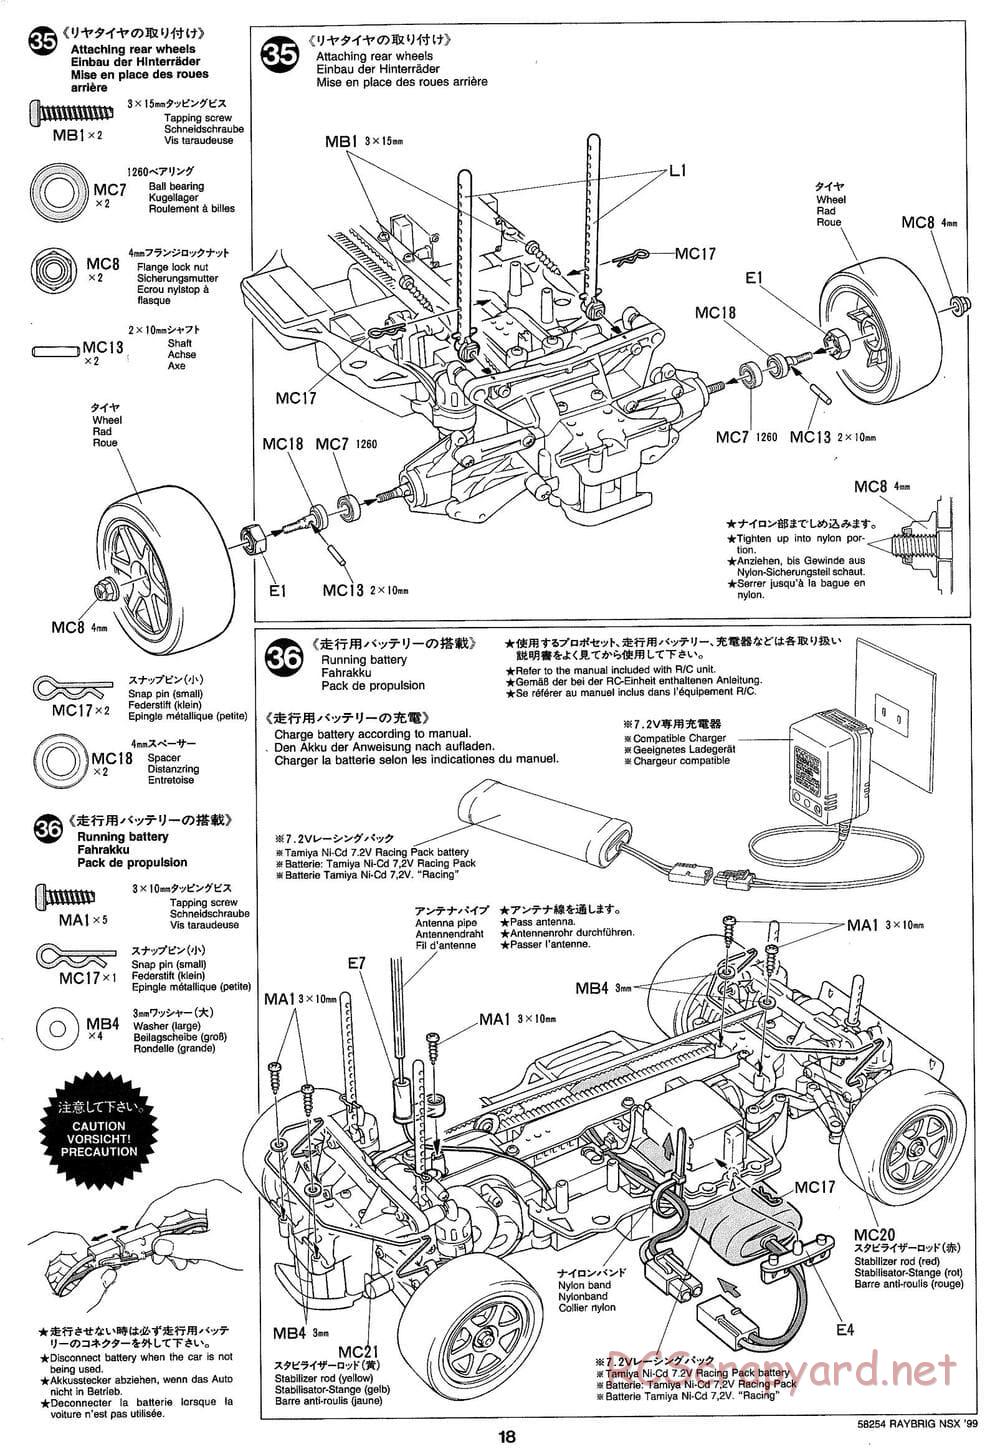 Tamiya - Raybrig NSX 99 - TA-03R Chassis - Manual - Page 18